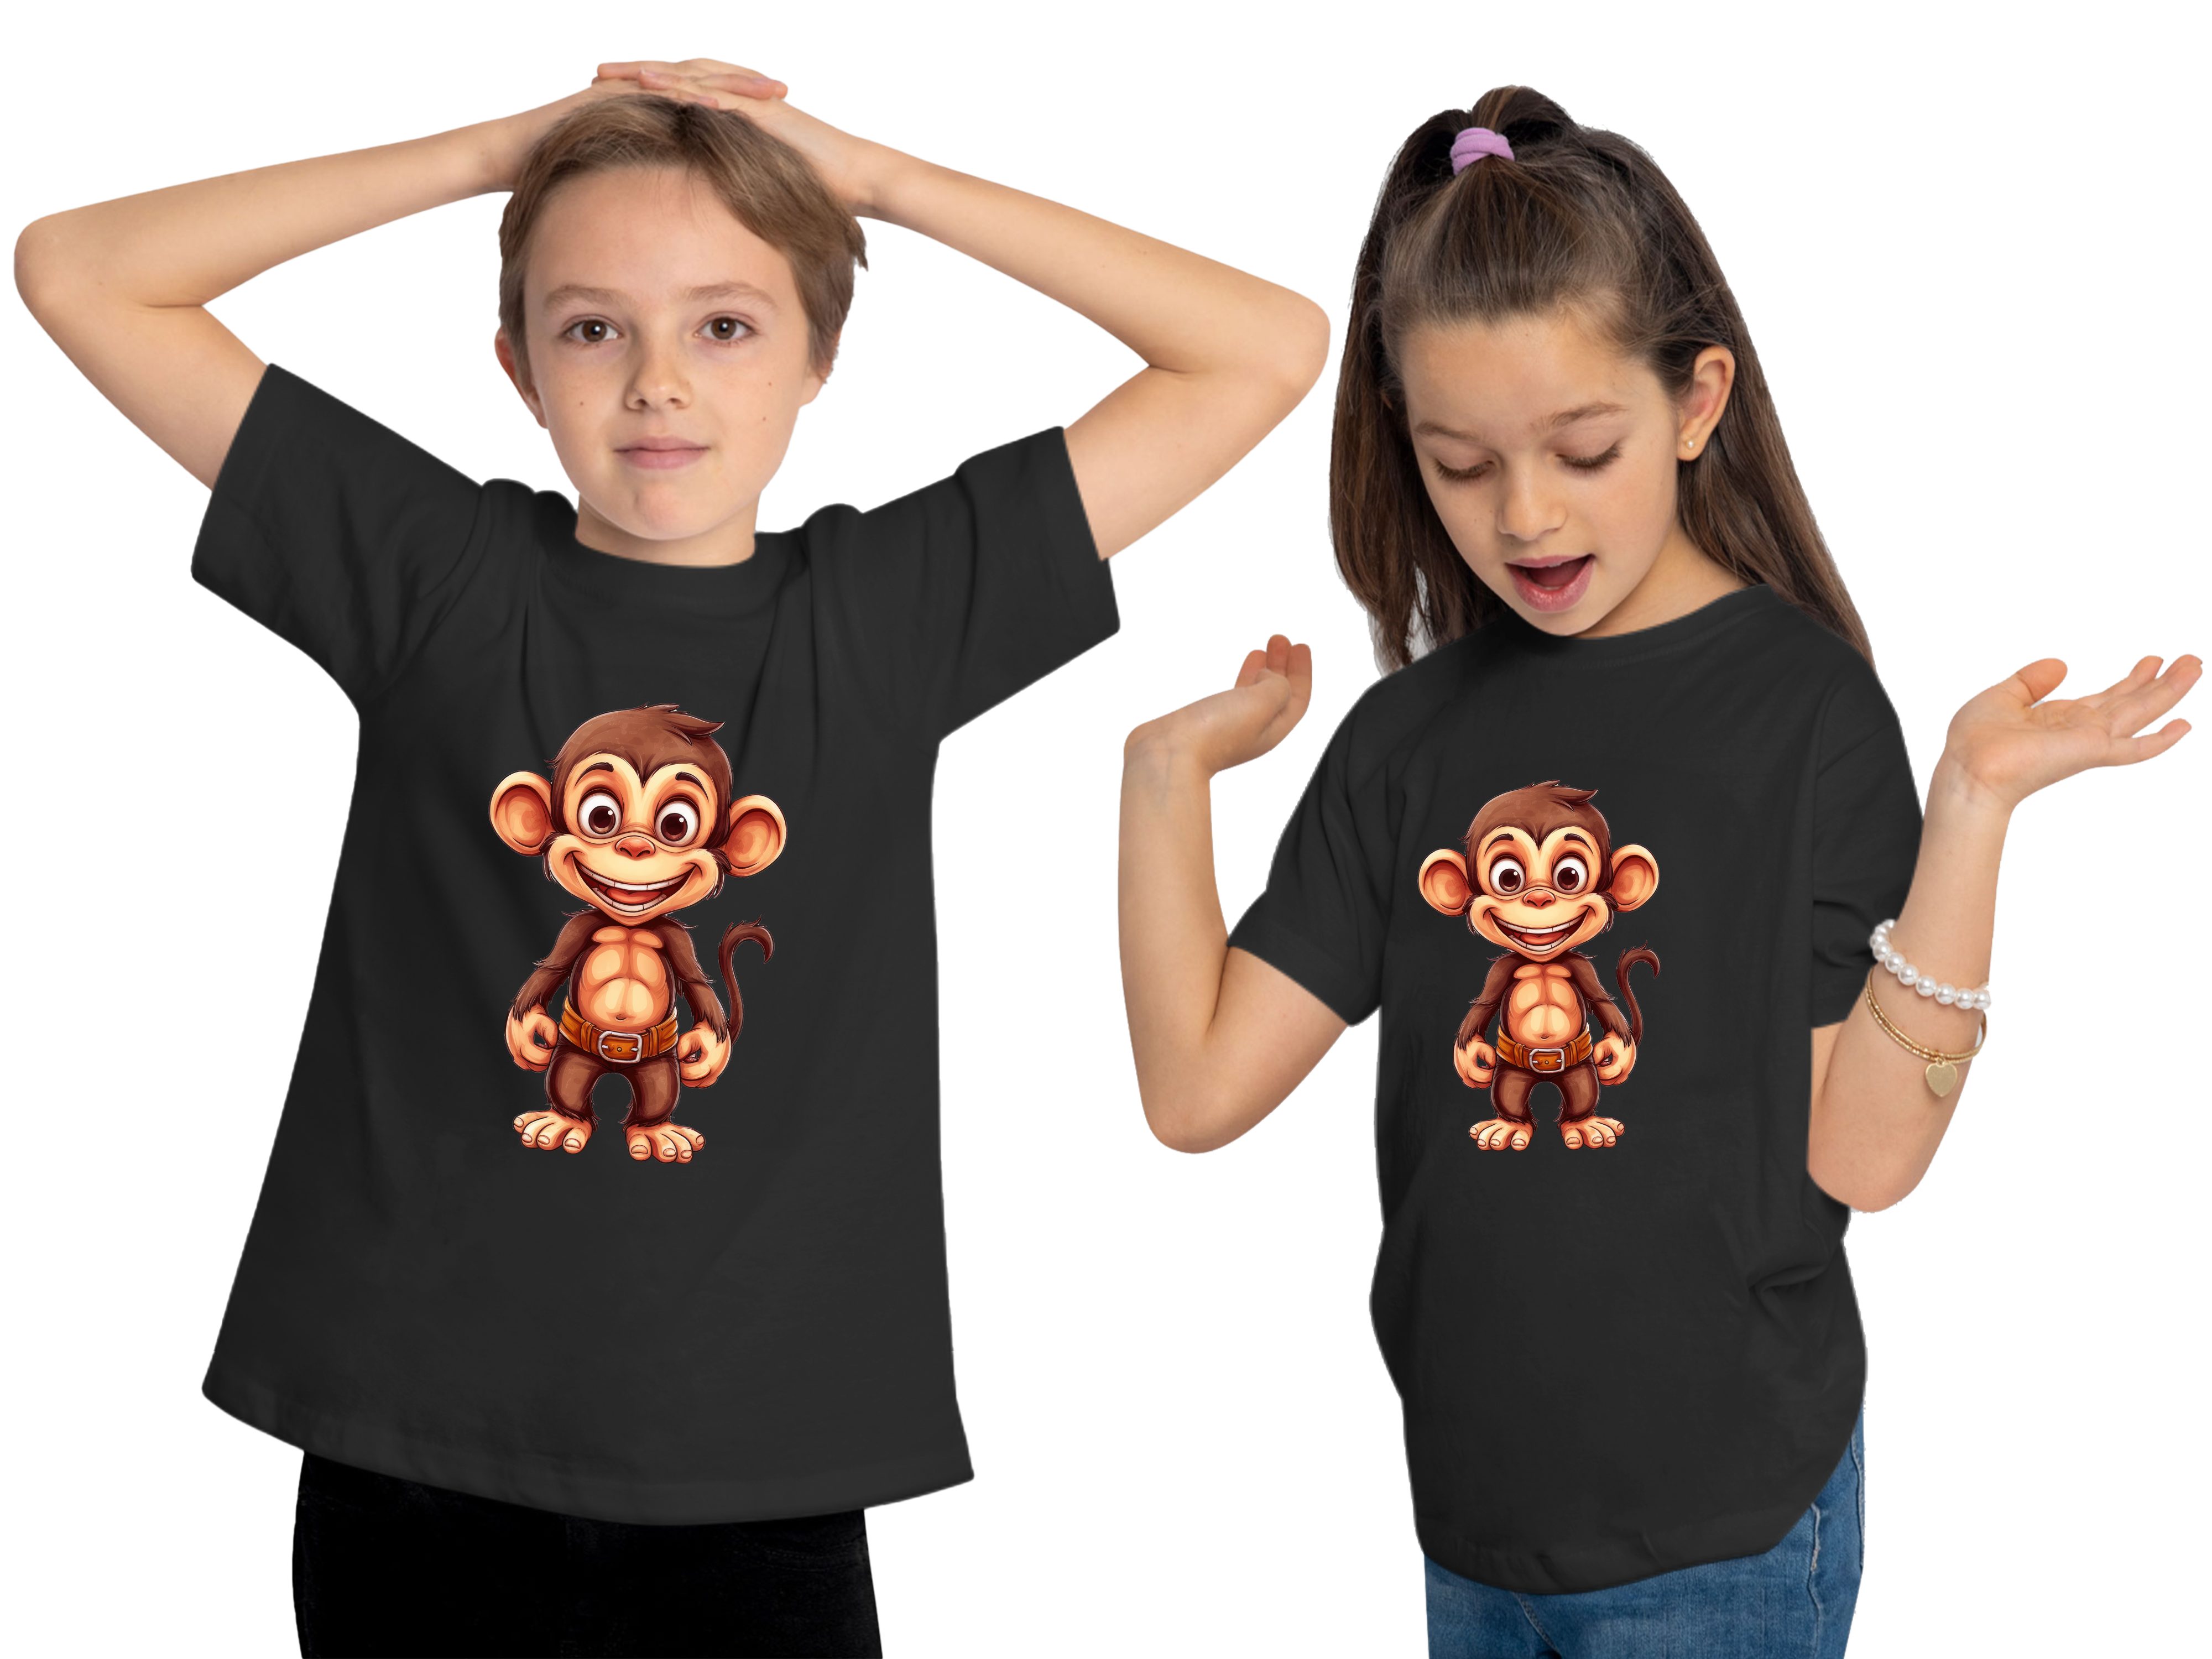 MyDesign24 T-Shirt Kinder Wildtier mit - Print Baumwollshirt bedruckt schwarz Baby i276 Shirt Aufdruck, Affe Schimpanse